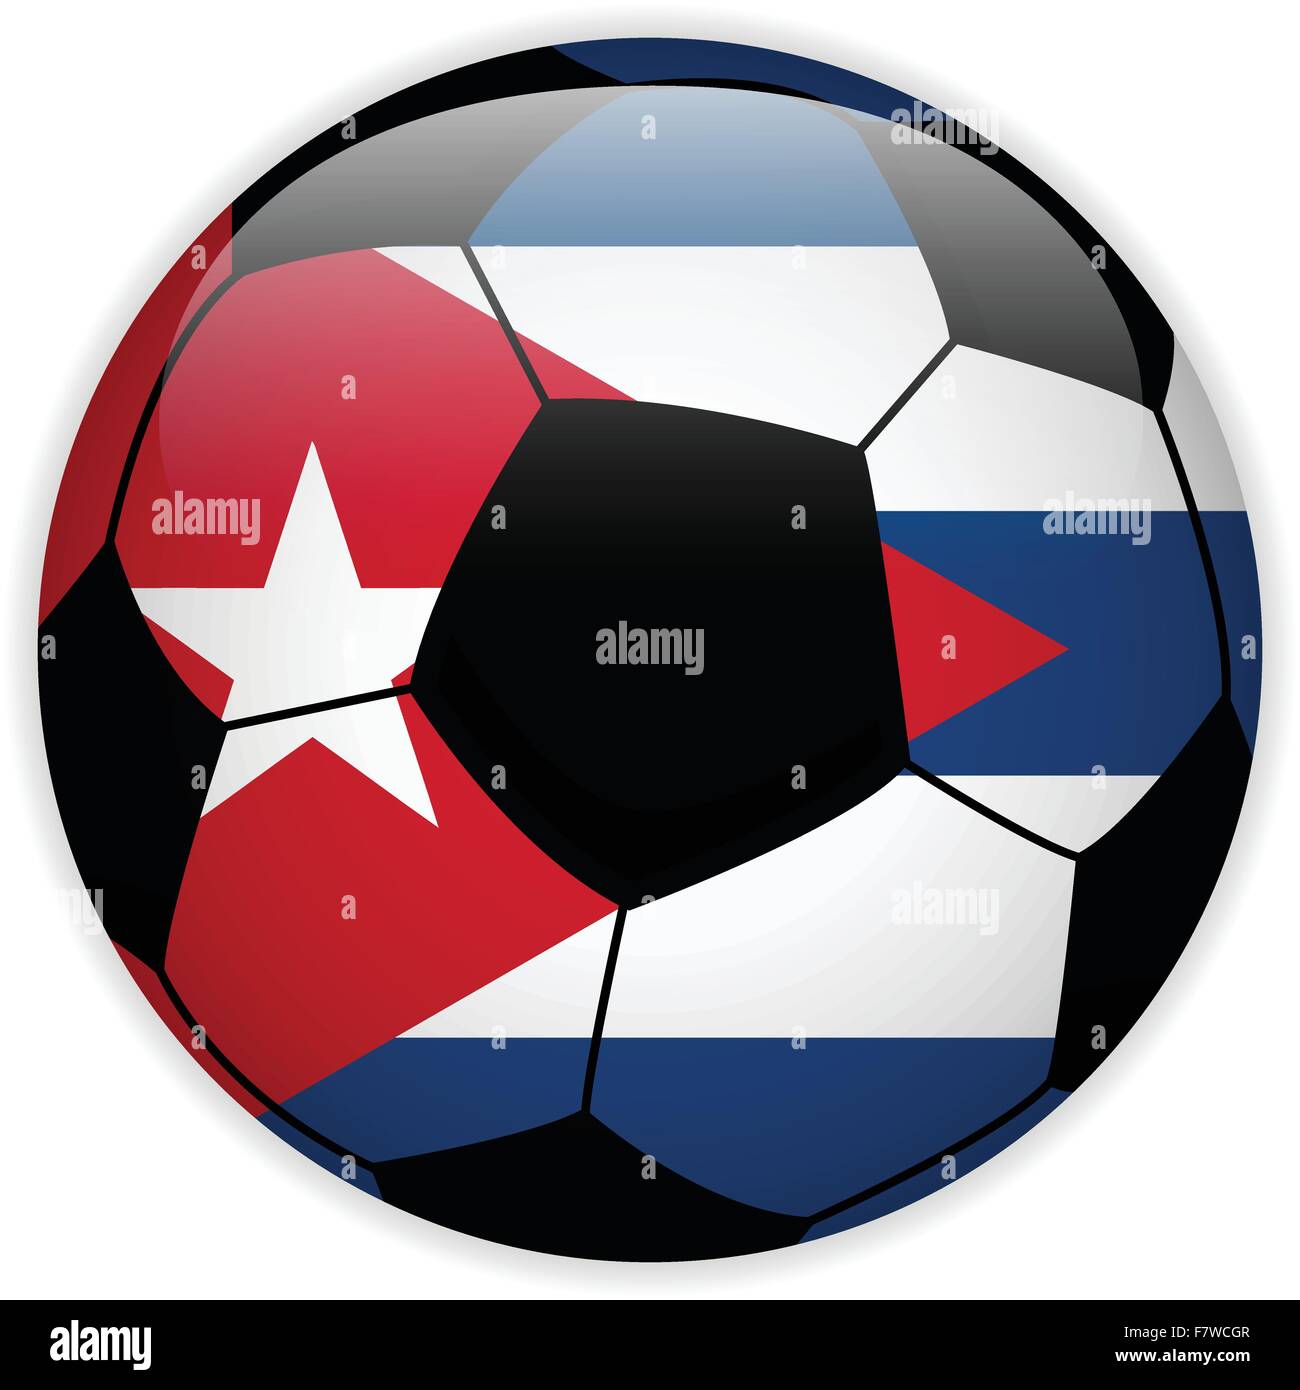 Pin by FUTBOX on National Teams  Football logo, Cuba, Vector logo